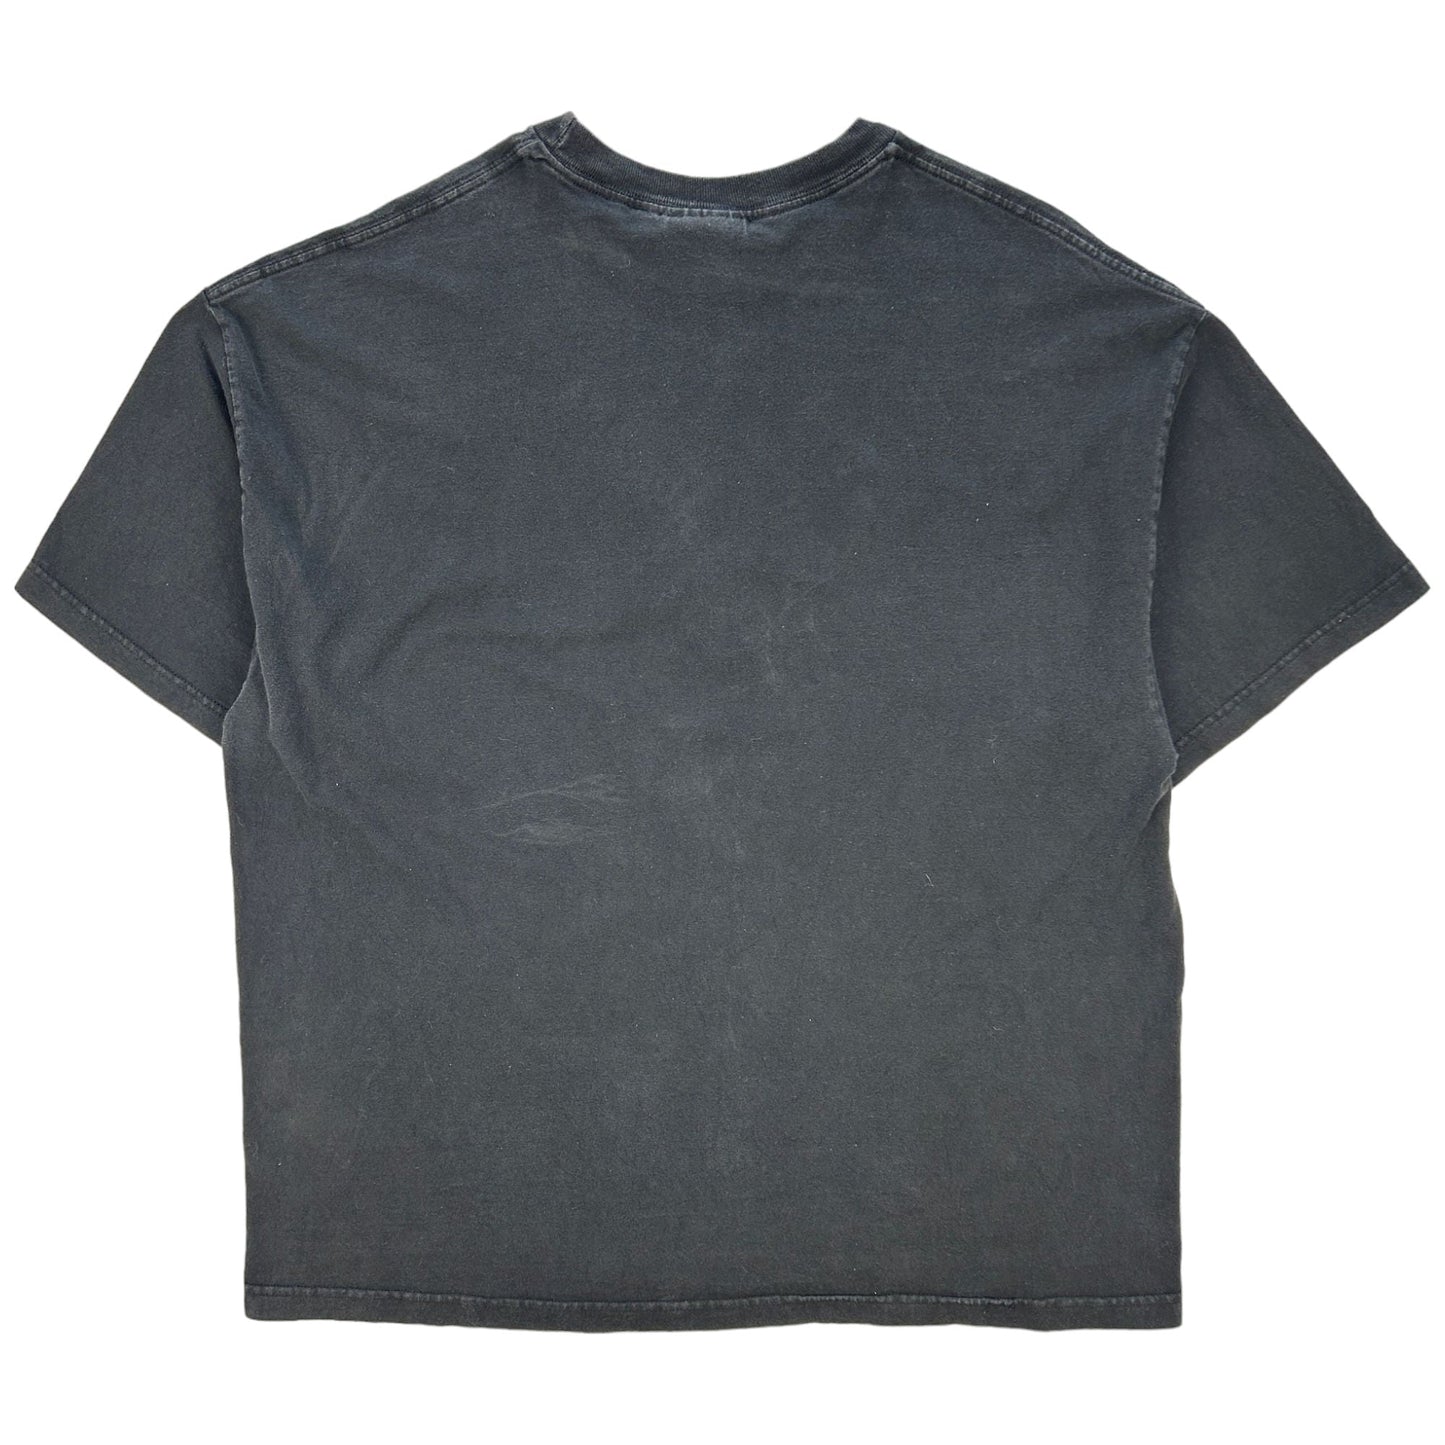 Vintage Venom Graphic T Shirt Size XXL